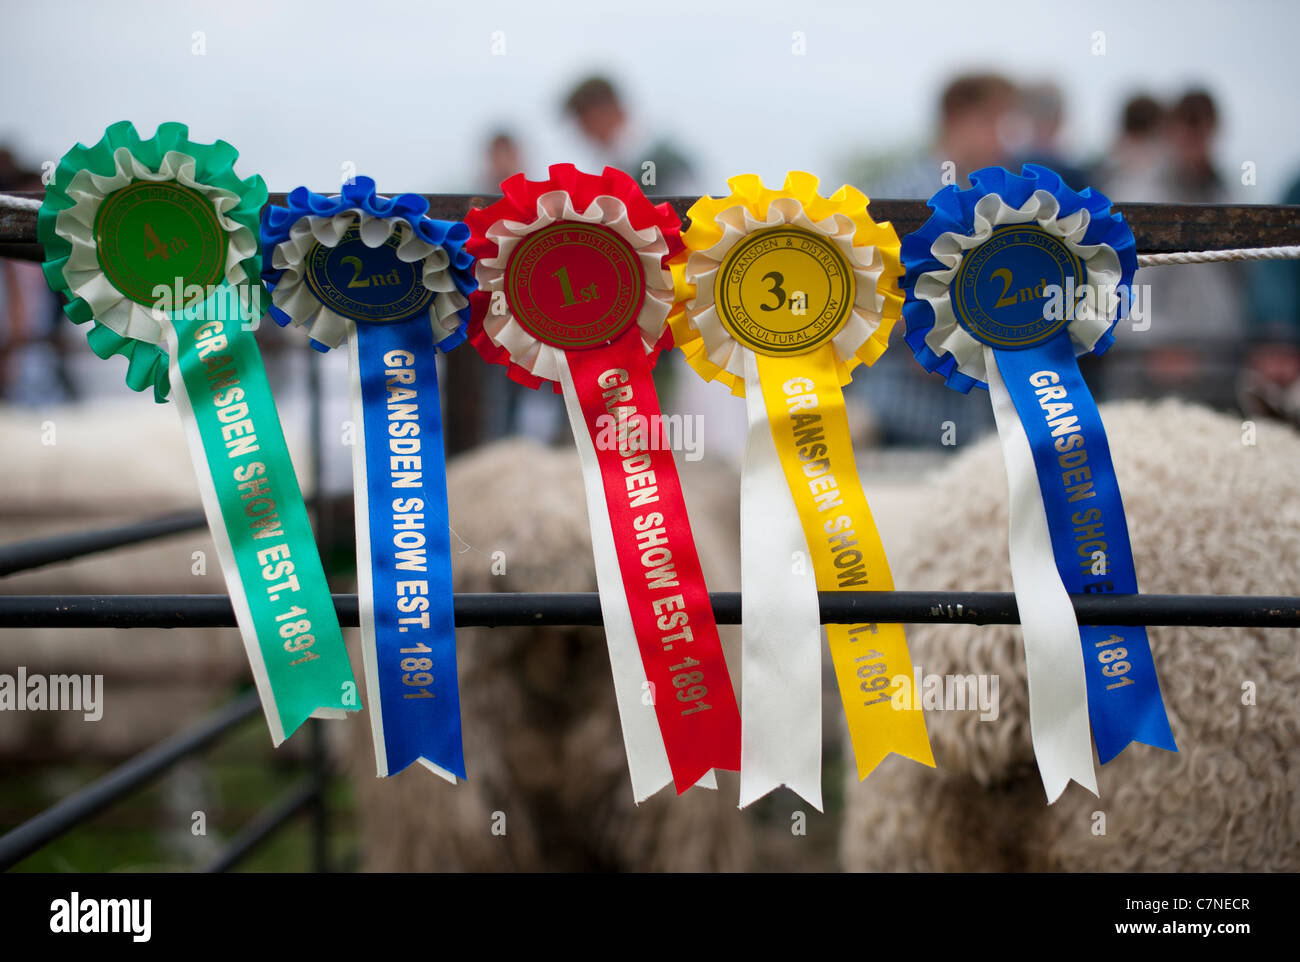 Sur rosettes afficher depuis l'élevage des gagnants du concours salon de l'agriculture à Gransden Cambridgeshire England UK Banque D'Images